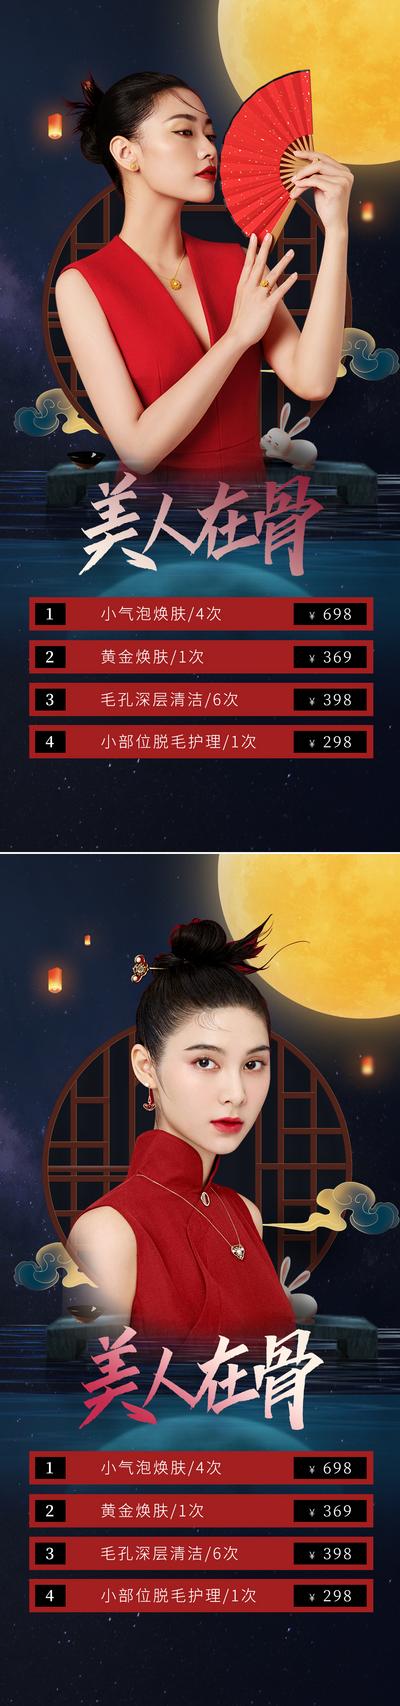 南门网 海报 医美 活动 促销 国潮 中国传统节日 中秋节 整形 美容